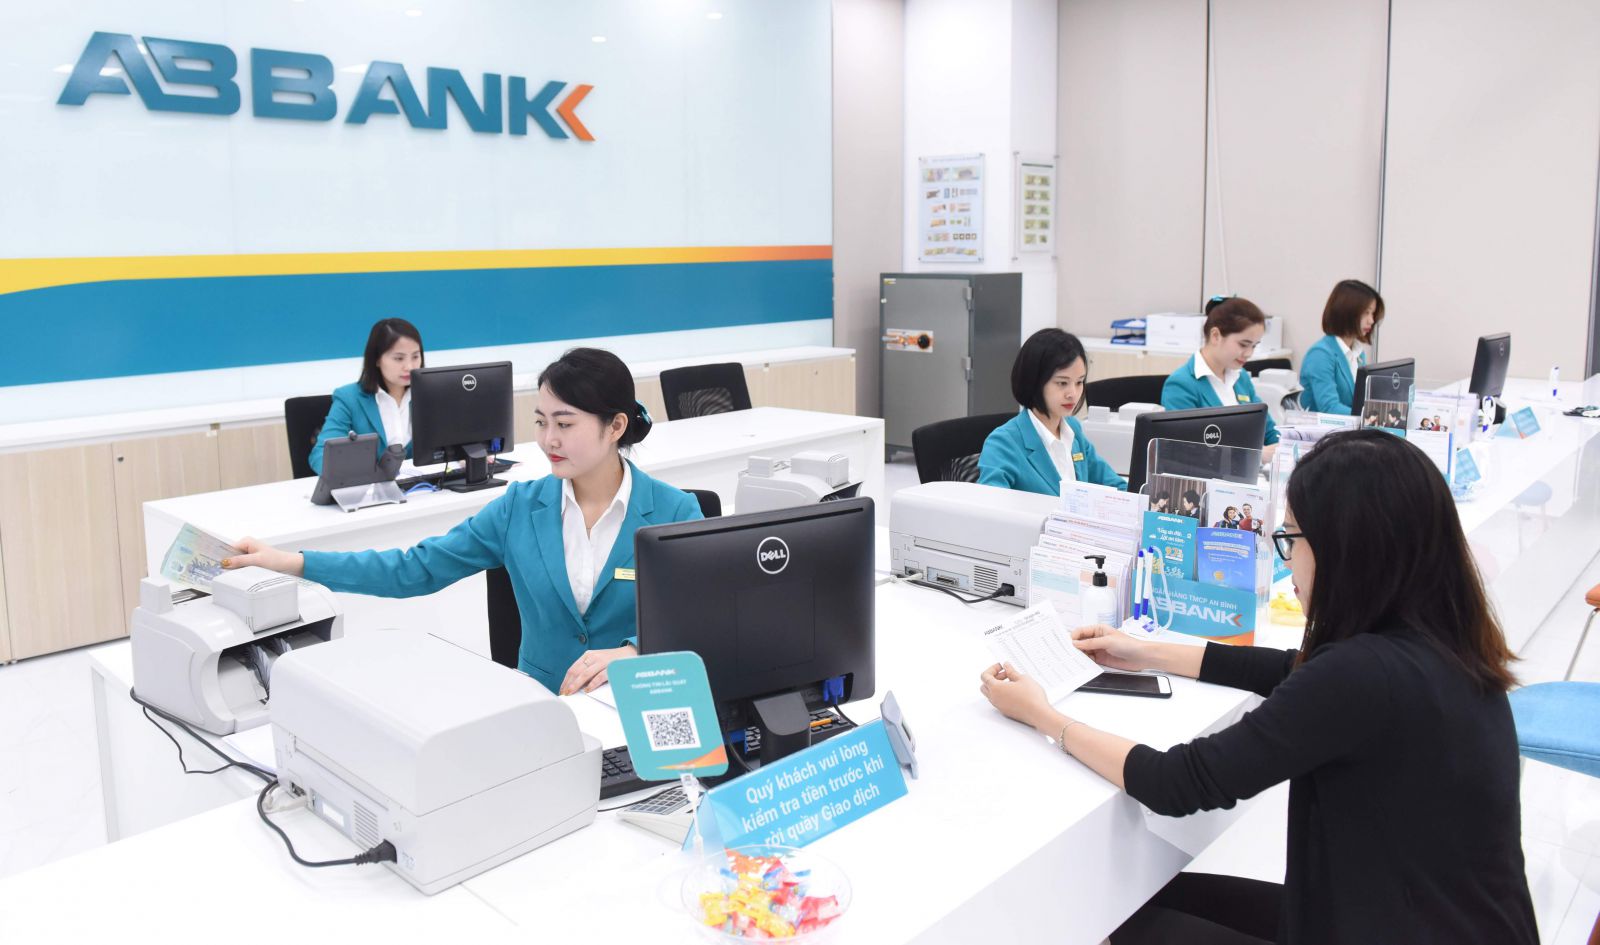 ABBANK xác định kế hoạch kinh doanh trong 5 năm tới (2021-2025) như: nằm trong Top 8 ngân hàng tư nhân có ROE tốt nhất